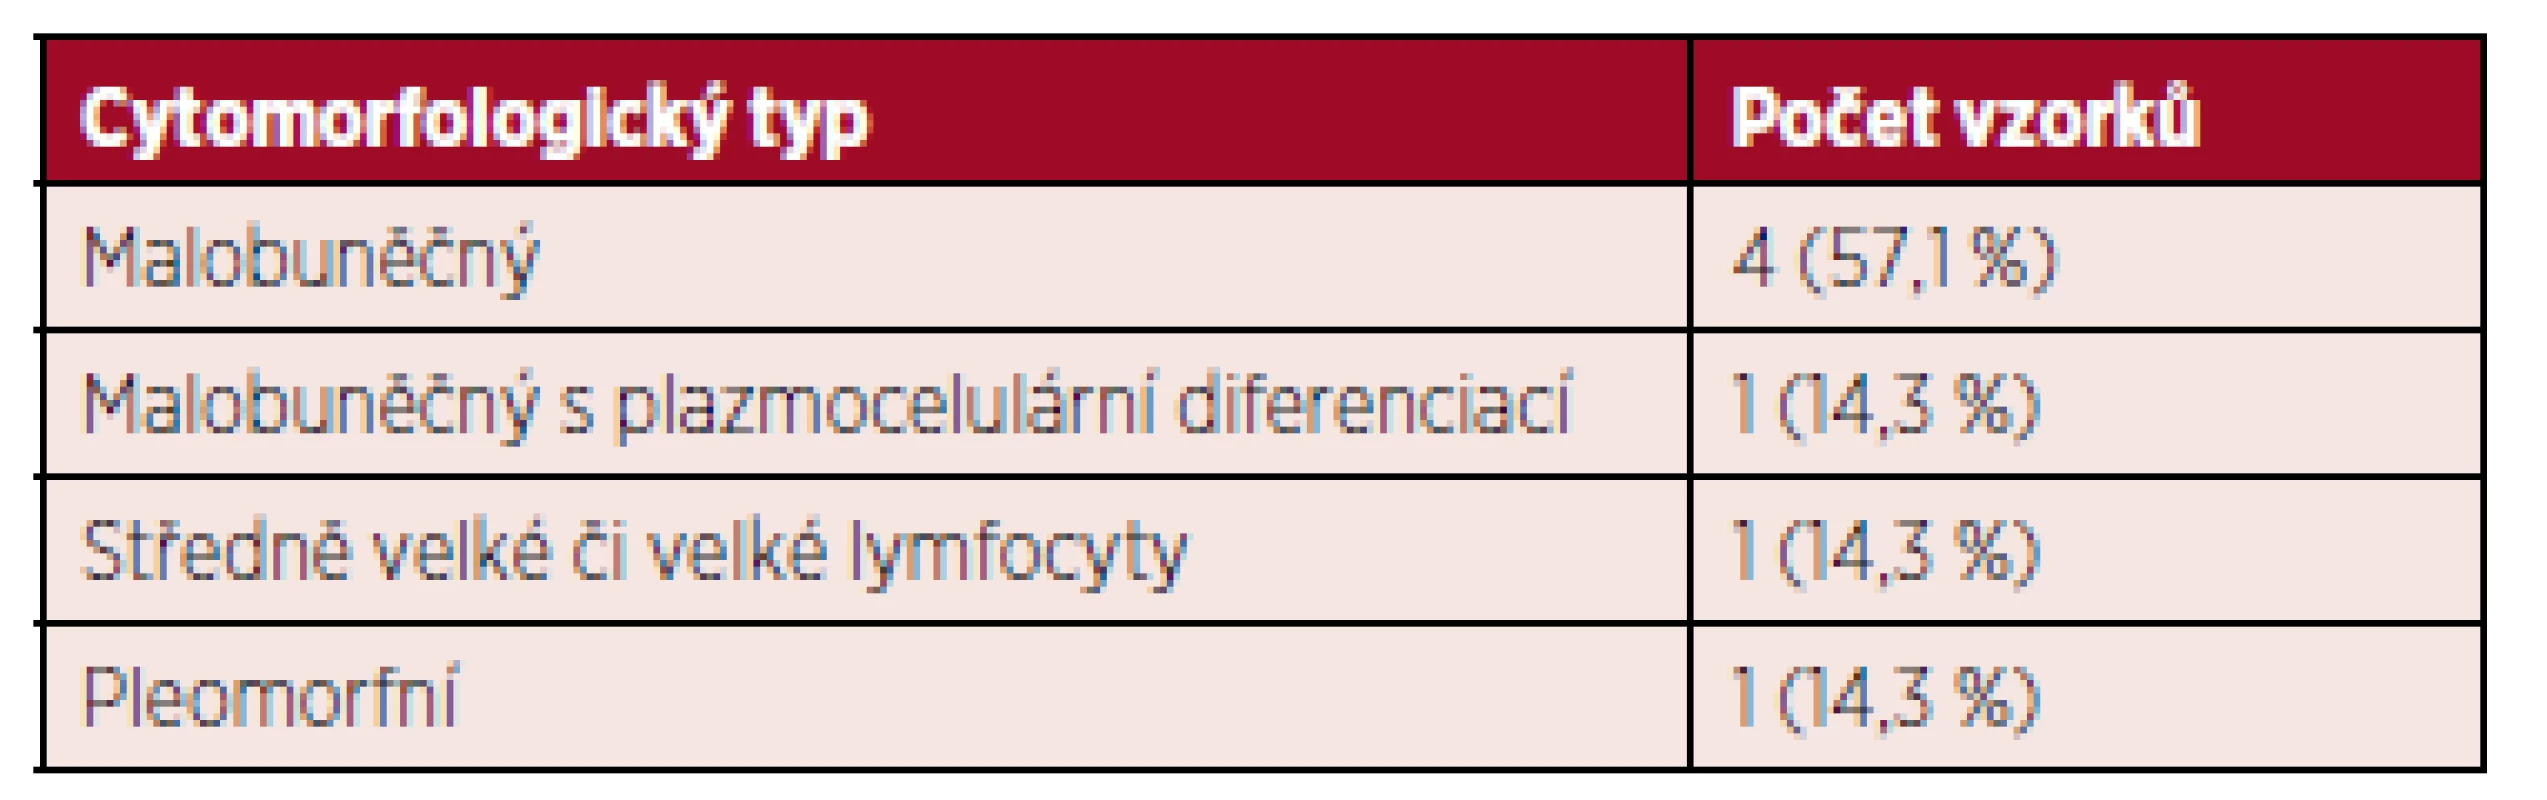 Cytomorfologie ve skupině neklasifikovatelných zralých CD5+ B-lymfoidních neoplazií